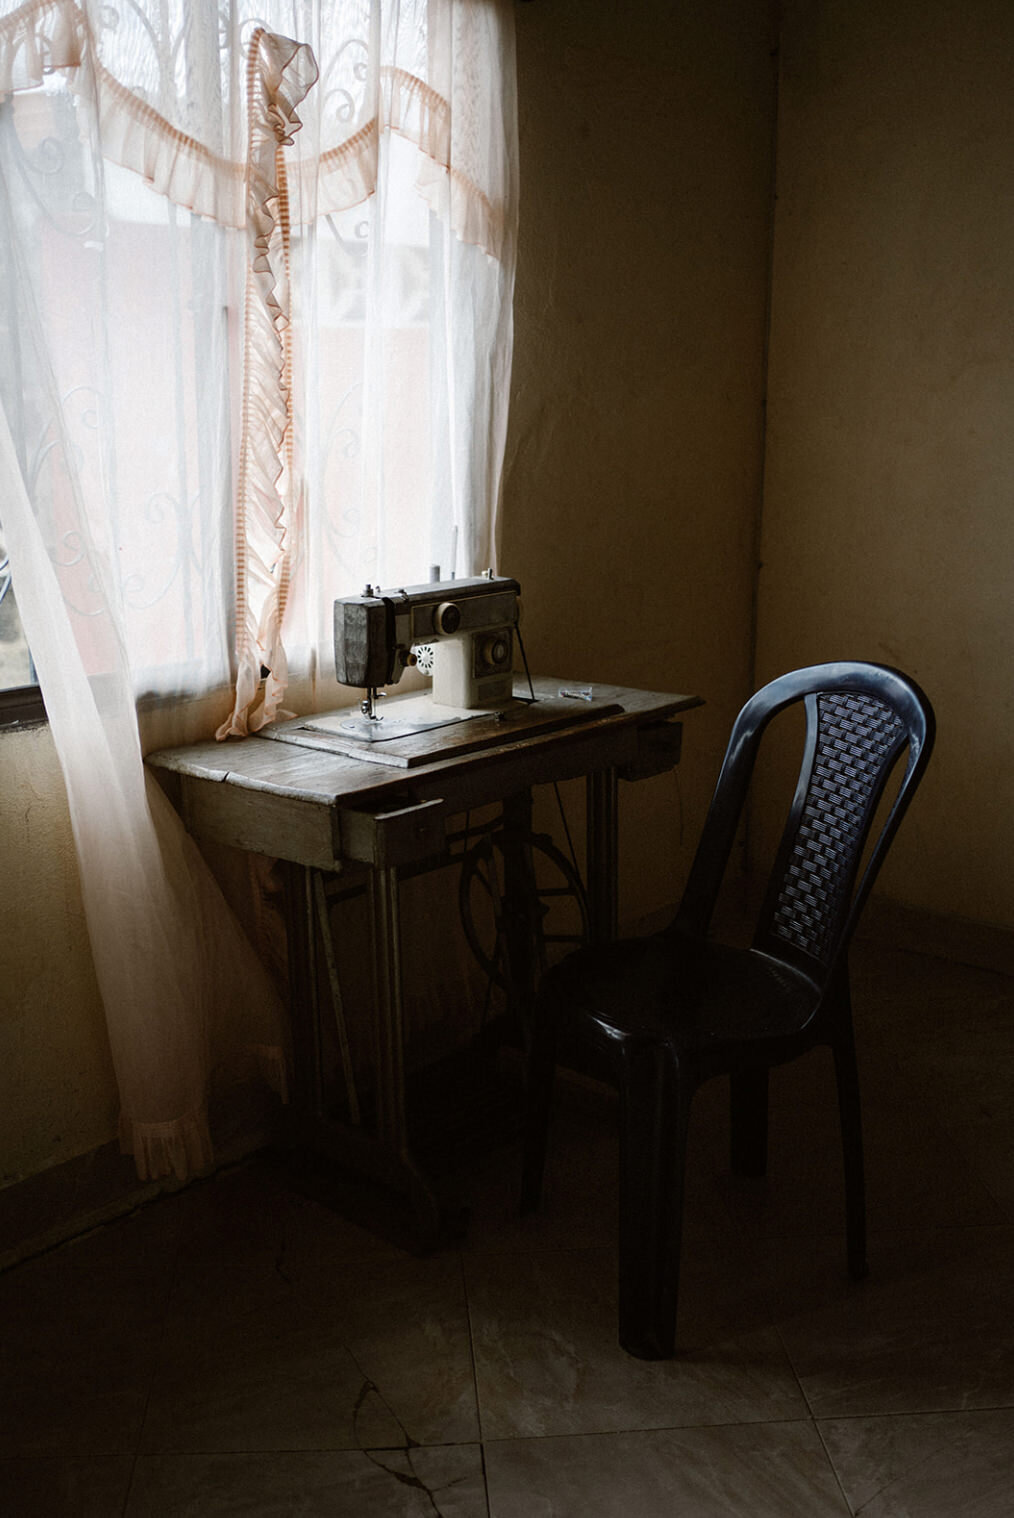 In de kamer staat er voor de raam met het gordijn een bureau waarop een naaimachine staat